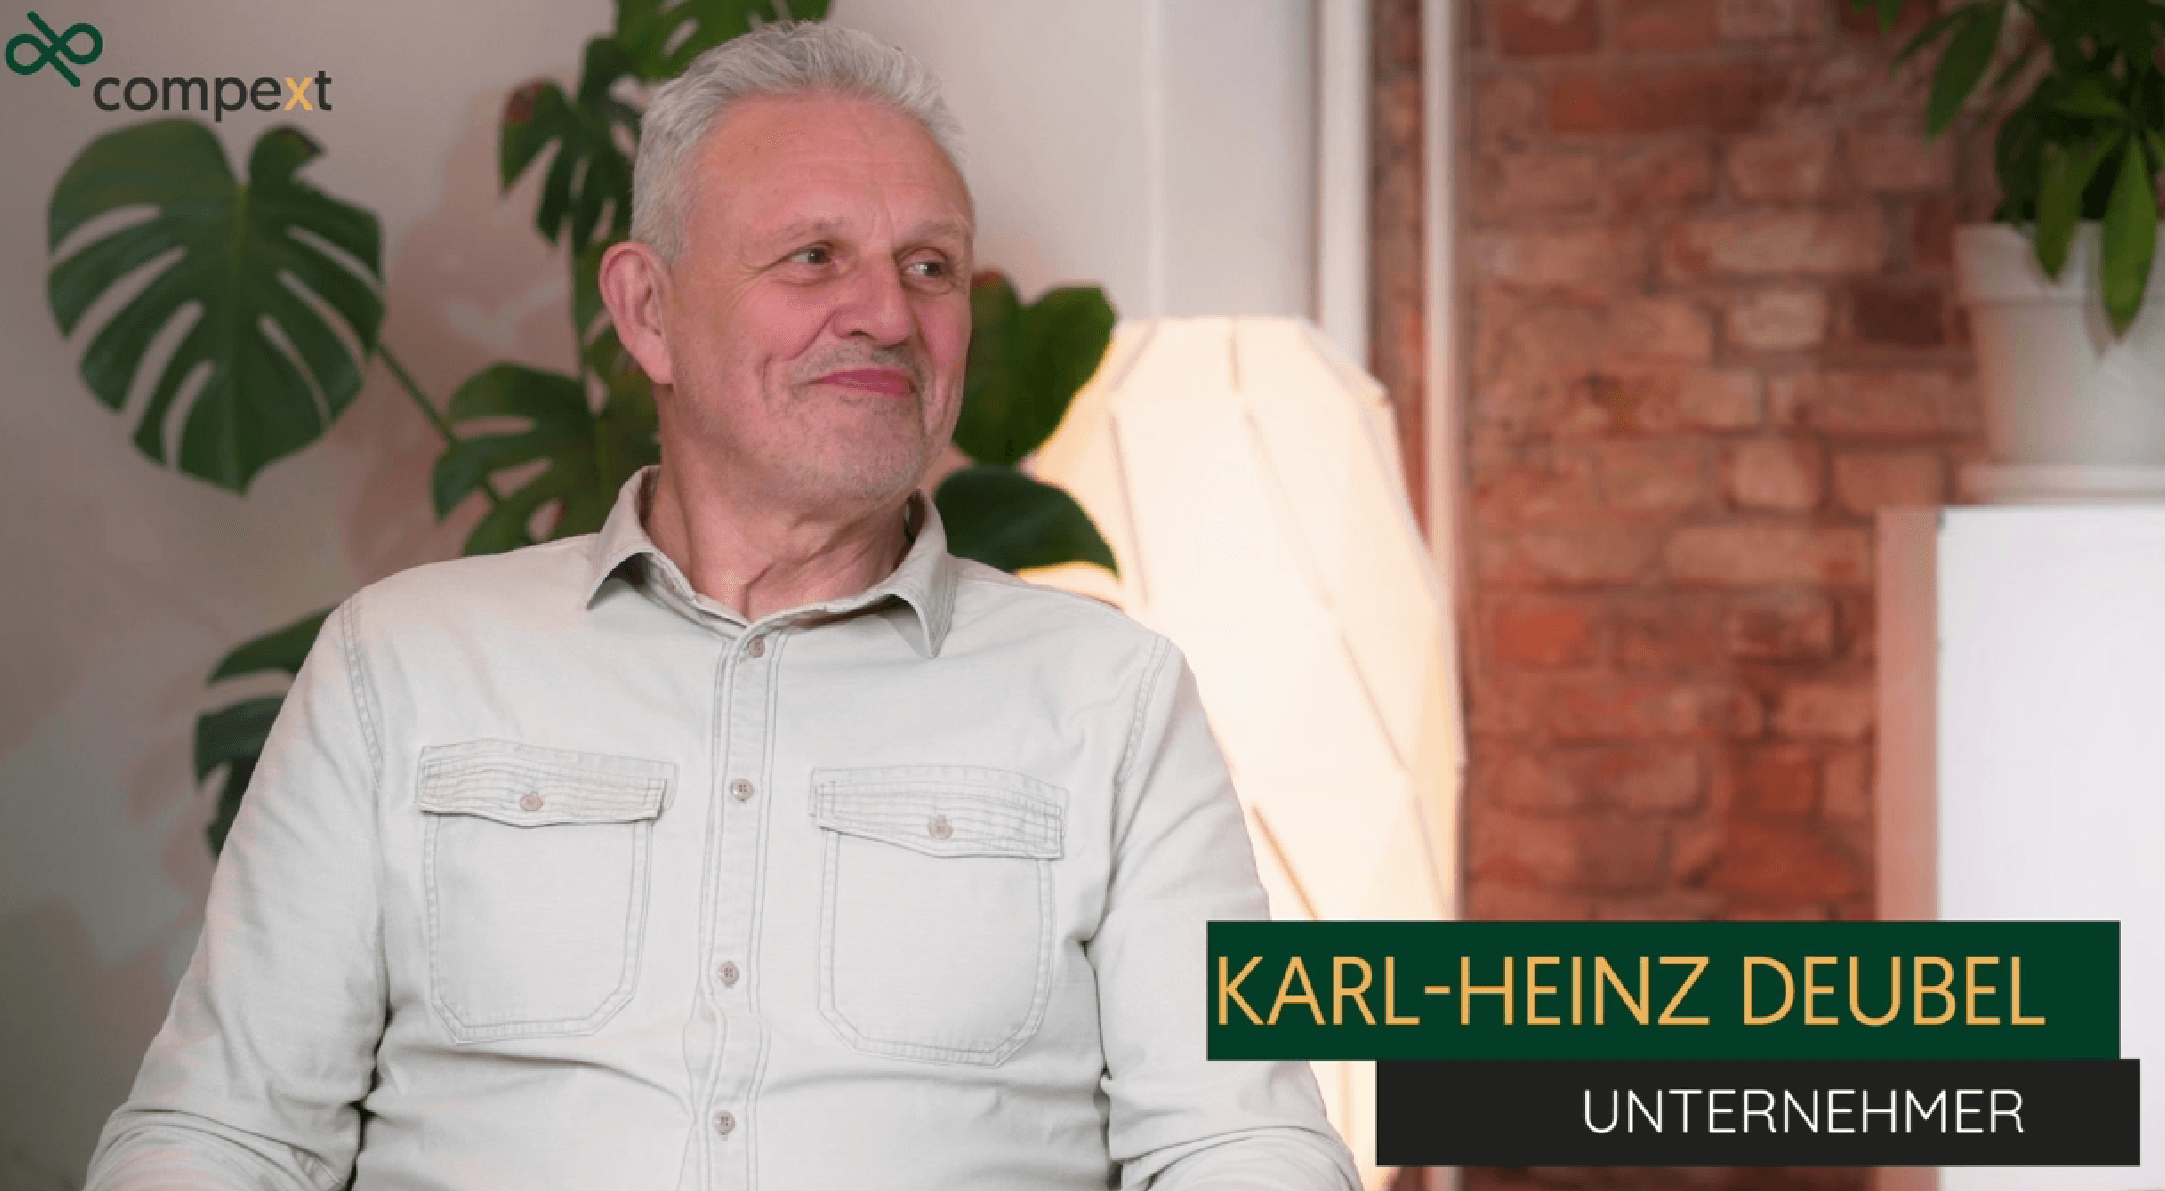 Experteninterview mit Karl-Heinz Deubel - Positionierung